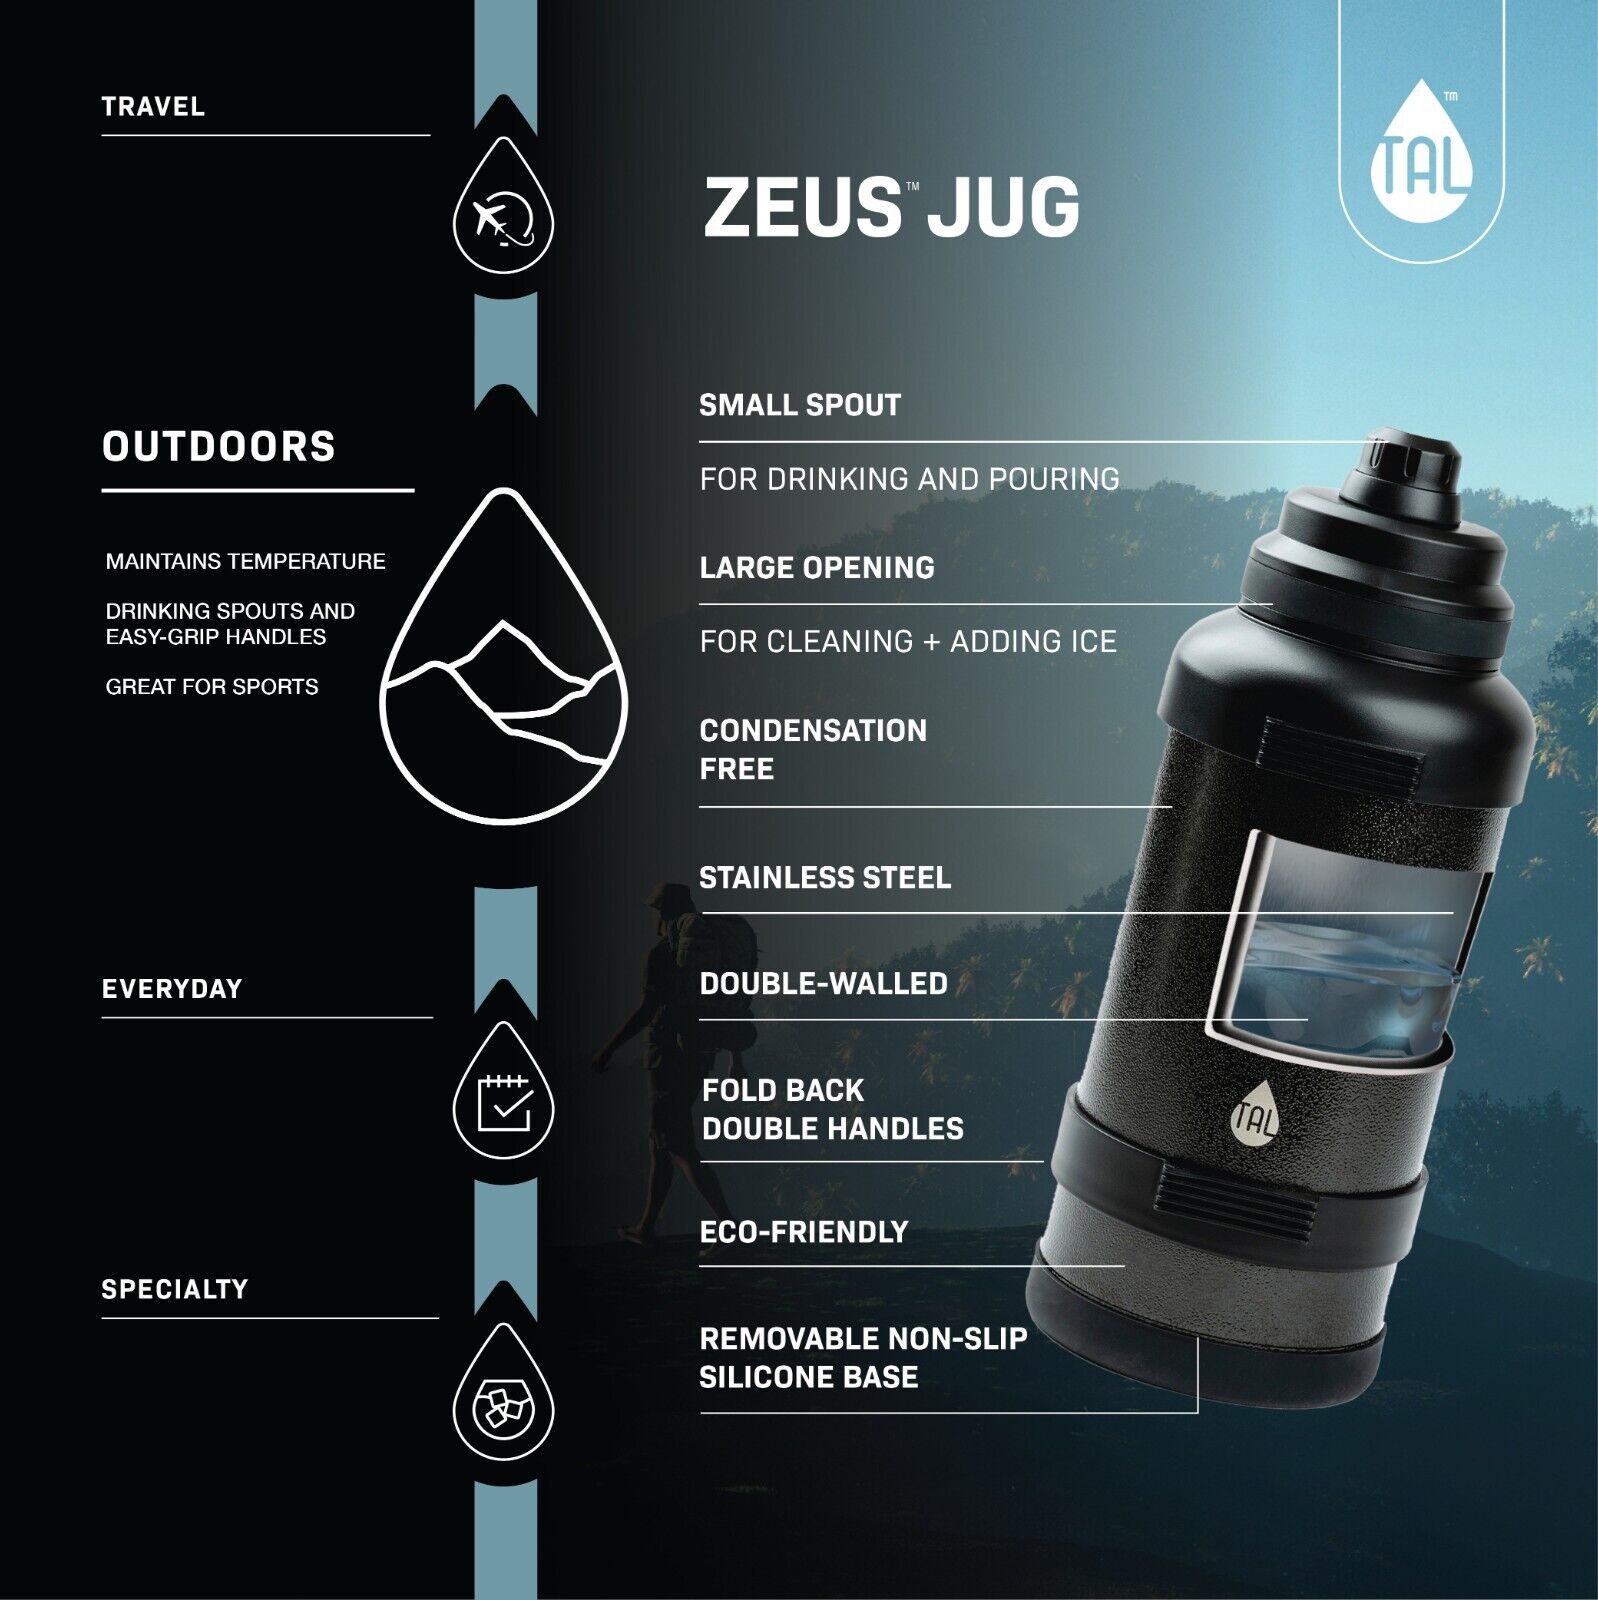 TAL Stainless Steel Zeus Water Bottle 3 Liter, Green Unbranded WM2216 - фотография #5